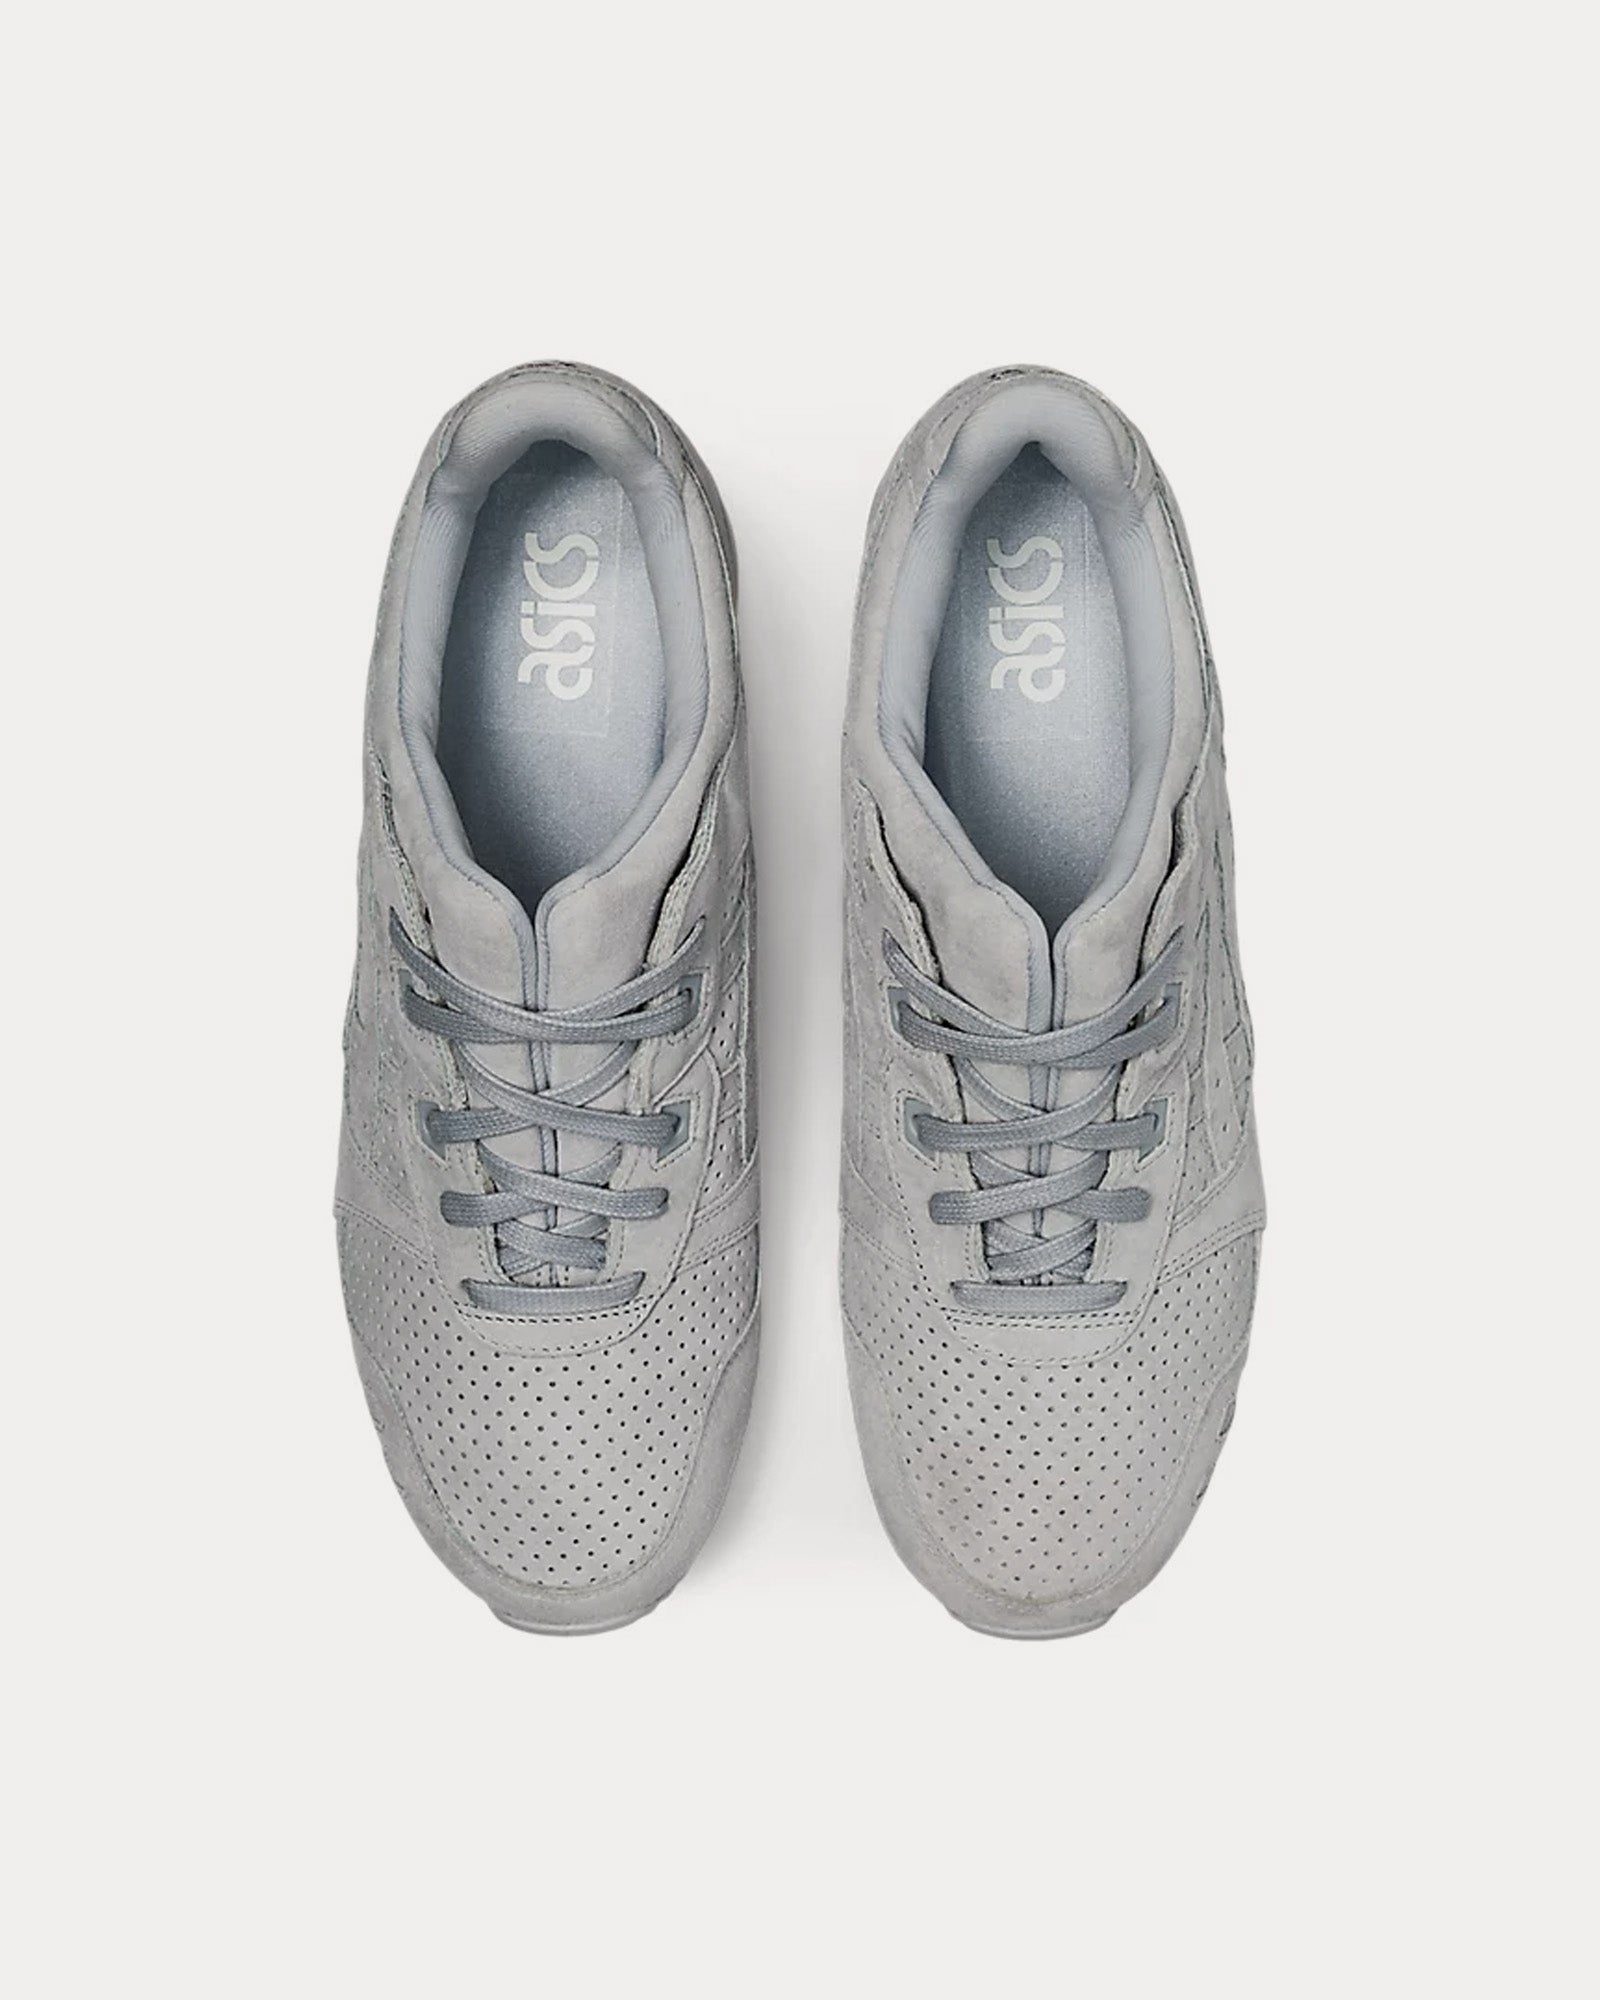 Asics - Gel-Lyte III OG Piedmont Grey / Piedmont Grey Low Top Sneakers